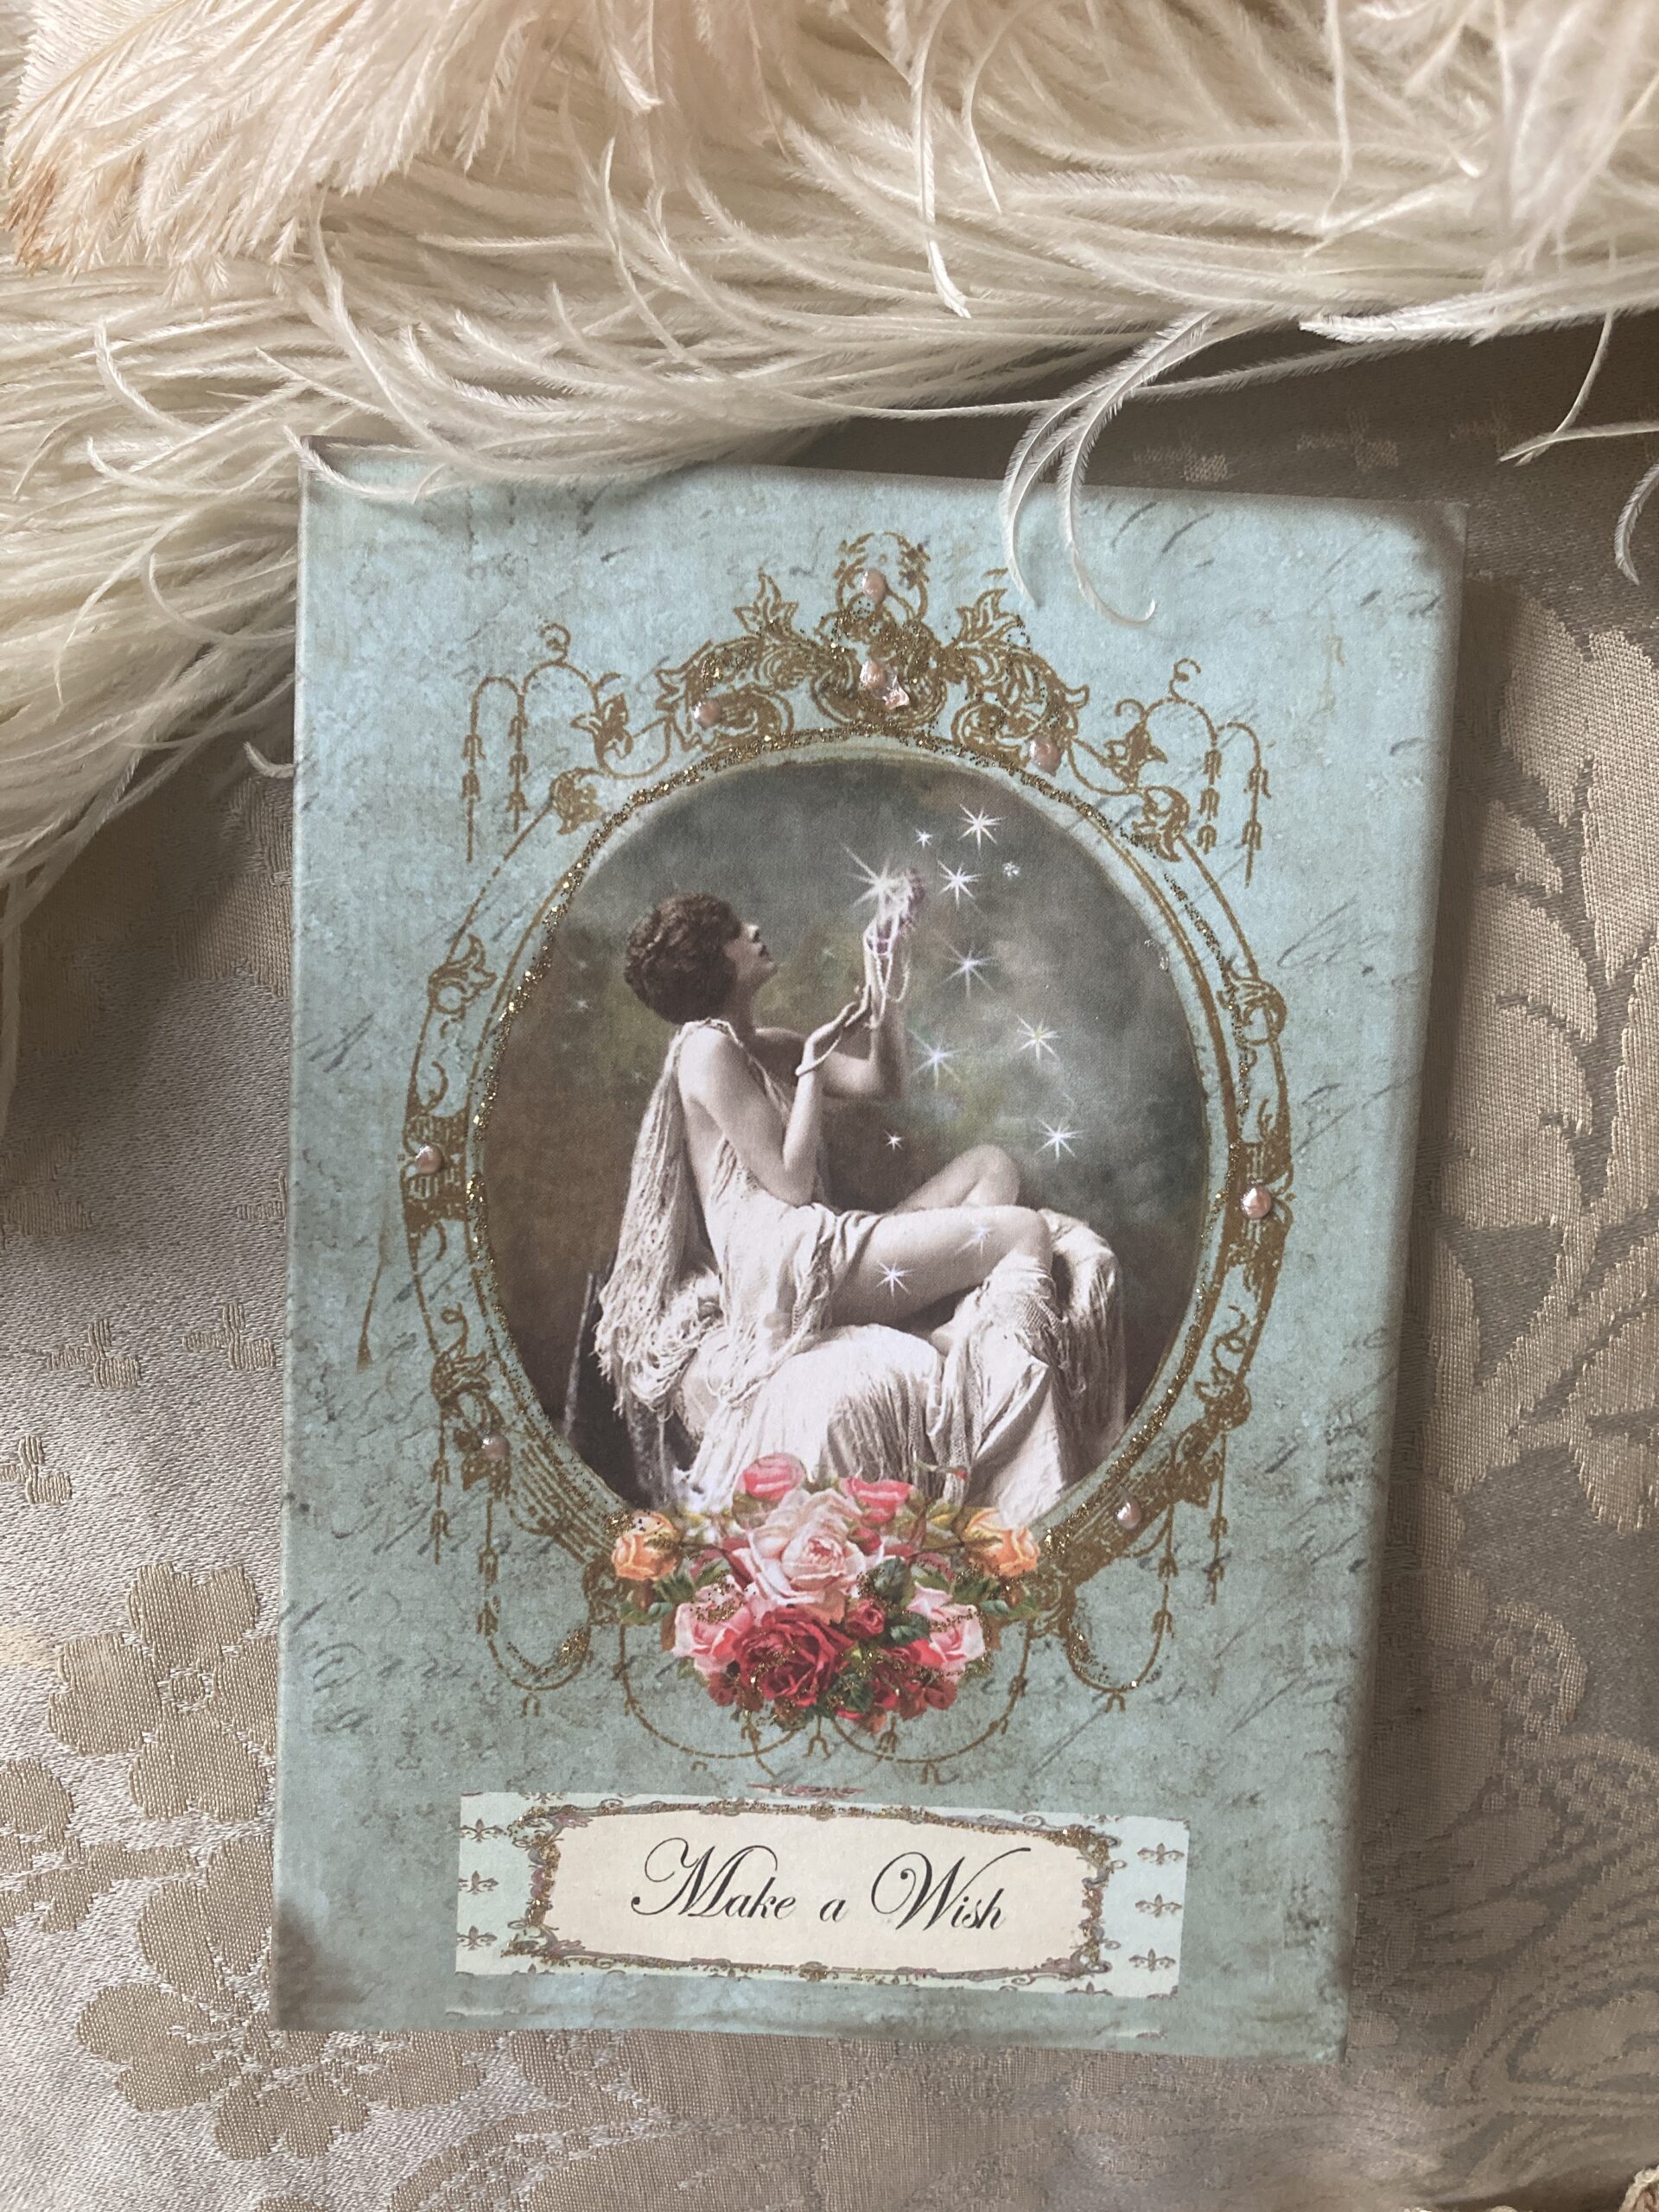 Miss Havishams Attic cards